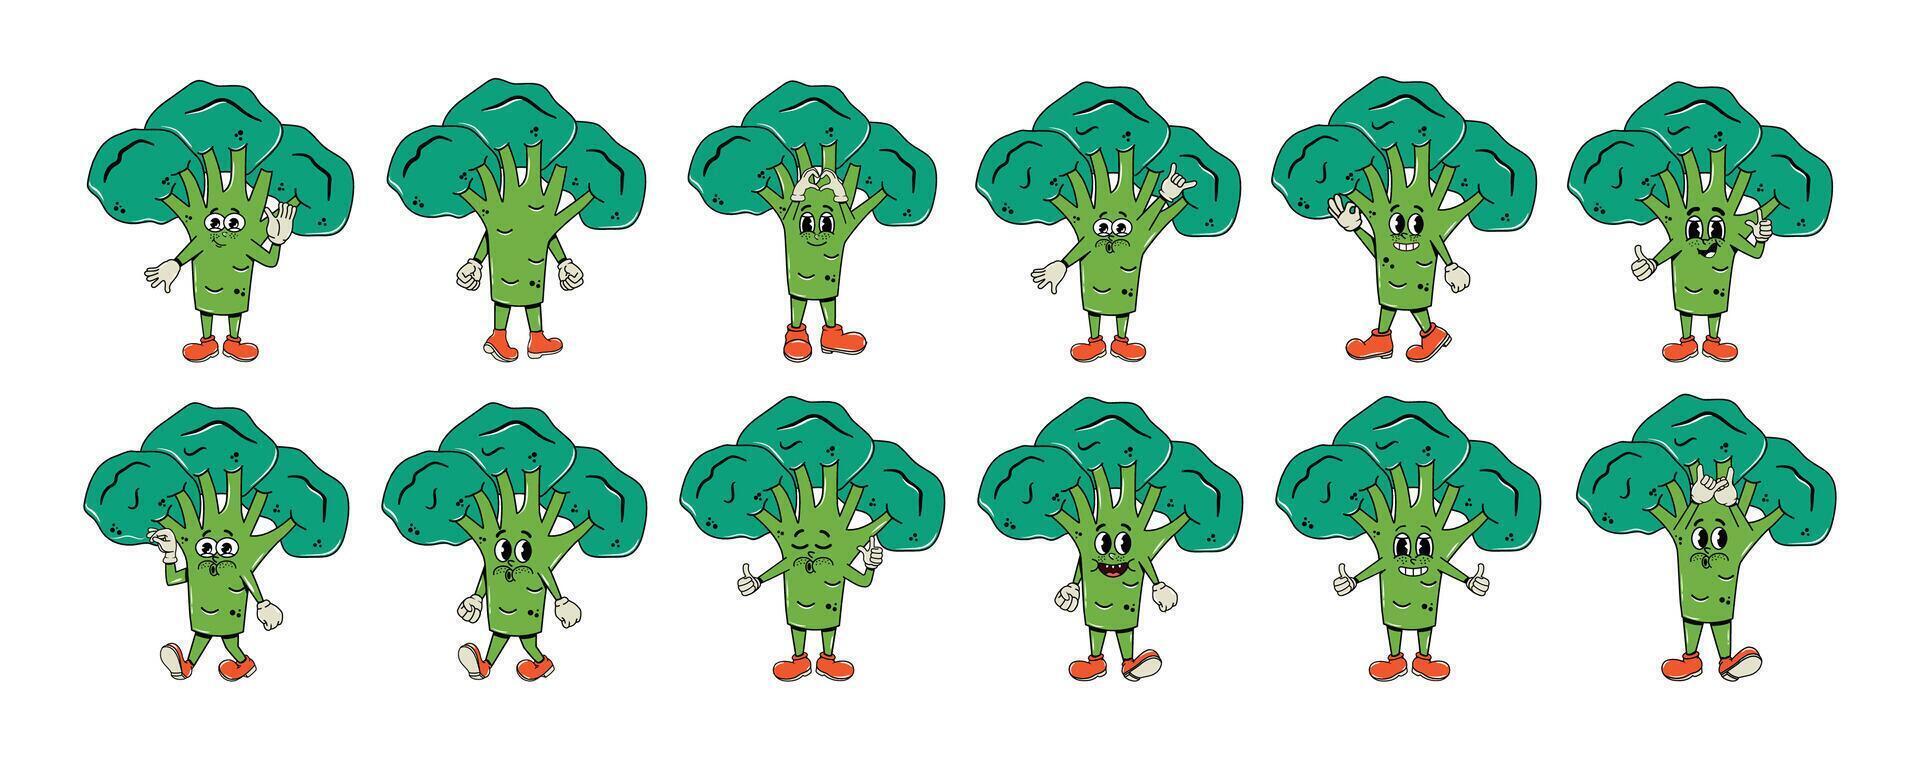 einstellen von Zeichen im groovig Stil. Gemüse, Brokkoli im ein Comic Hippie 70er Jahre Stil. Vektor Illustration. isoliert. Charakter y2k Element. Formen psychedelisch. Sammlung von Gesichter und Hände. Aufkleber